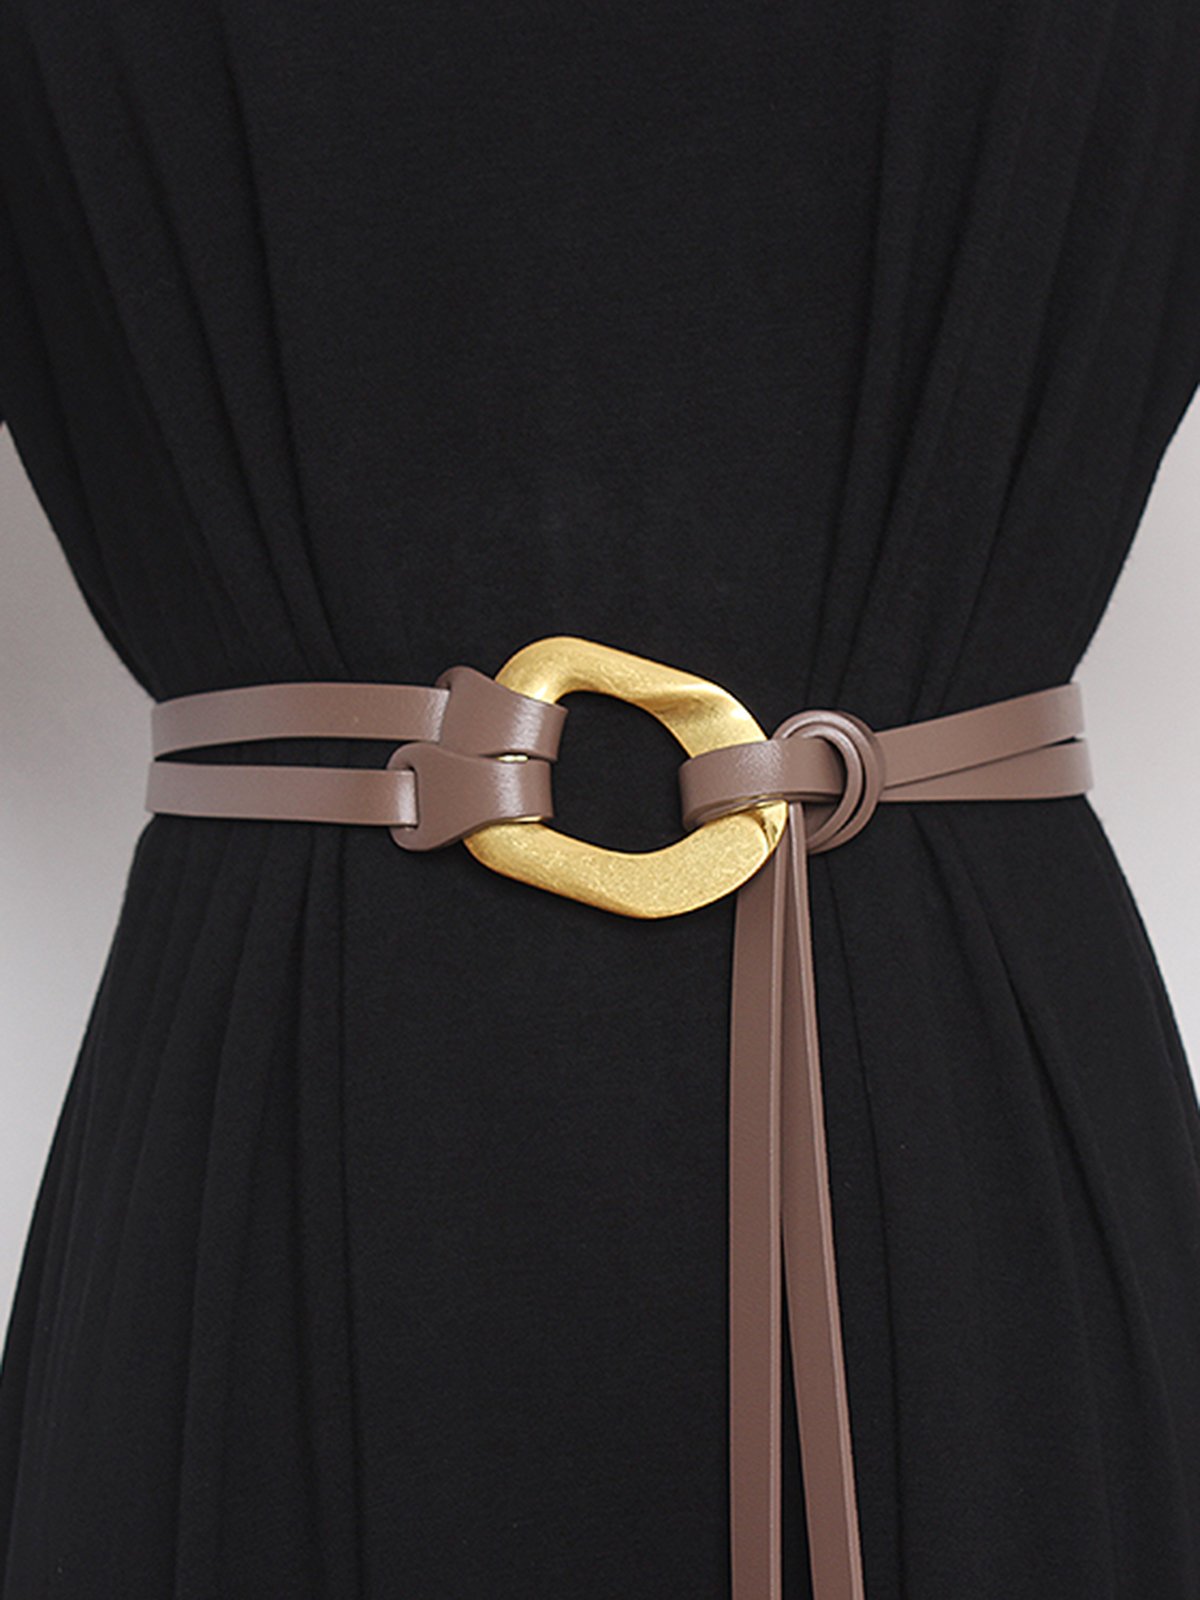 Fashionable Metal Buckle Split Leather Adjustable Double Belt